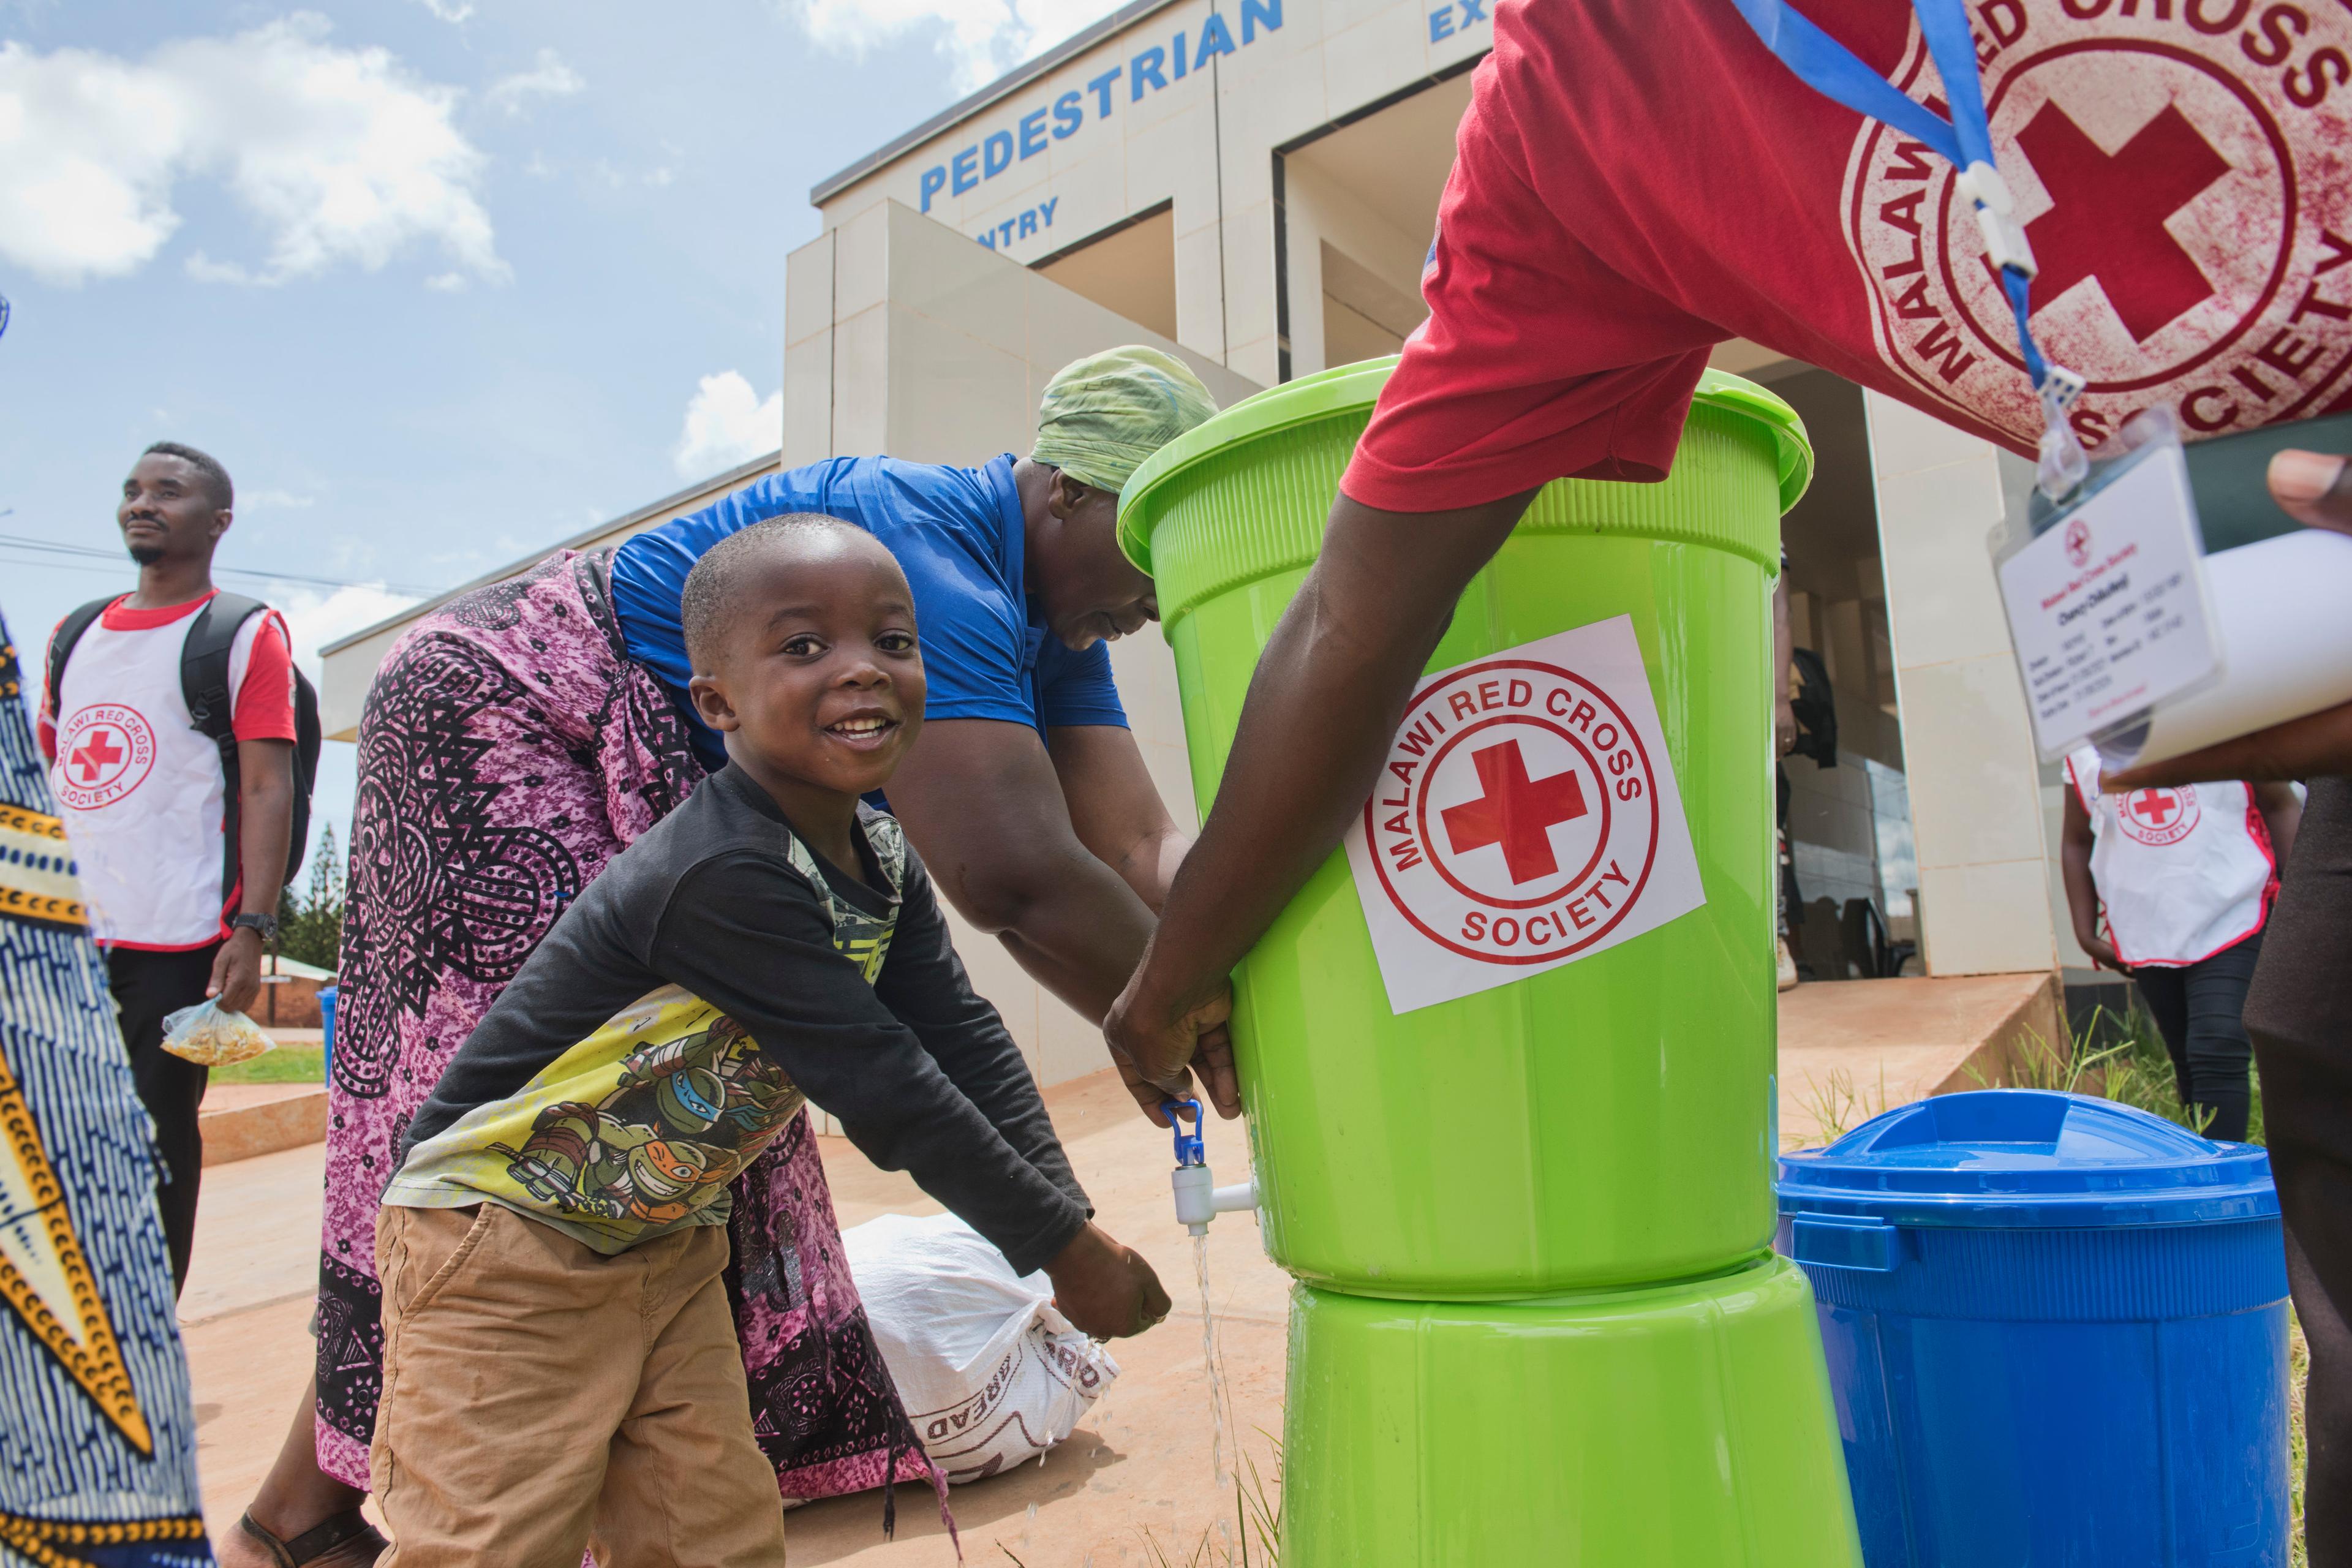 Ein kleines Kind wäscht sich die Hände aus einer Plastikschüssel, auf der ein großer Aufkleber des Roten Kreuzes von Malawi zu sehen ist. Eine erwachsene Person, deren Kopf nicht zu sehen ist, betätigt den Wasserhahn. Auf dem T-Shirt der erwachsenen Person ist das gleiche Logo des Malawischen Roten Kreuzes zu sehen.